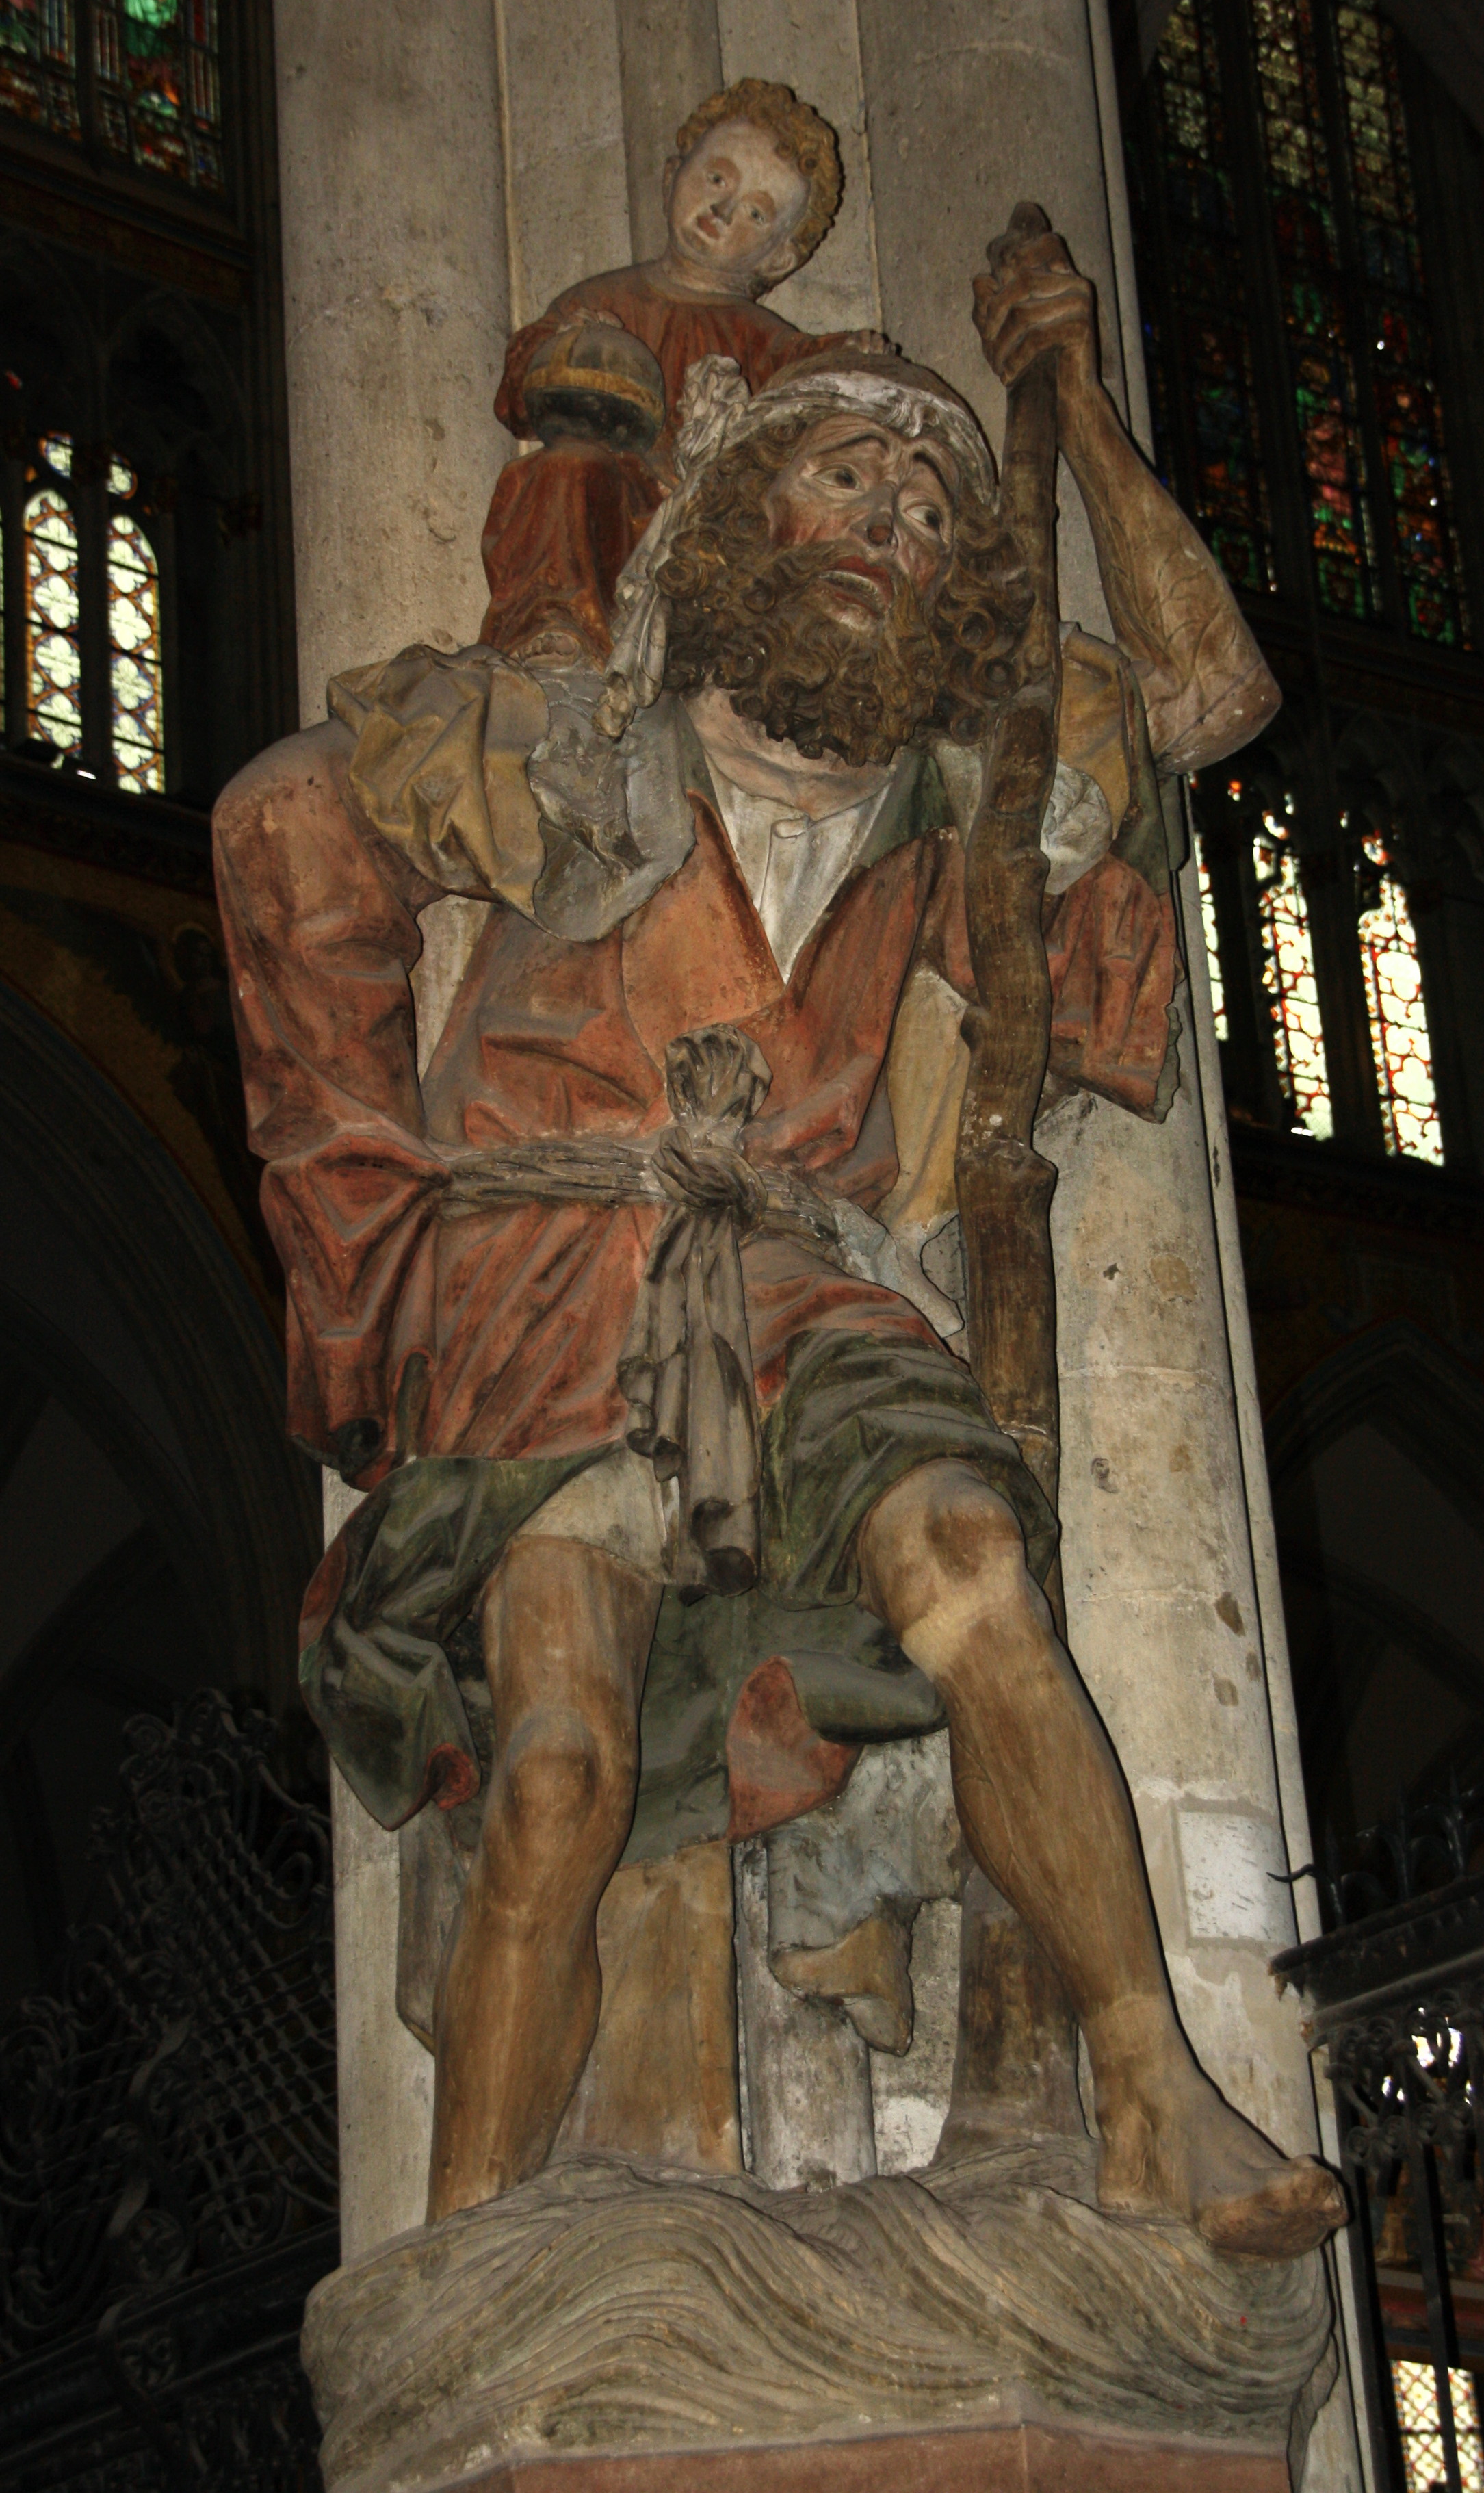 statue de Saint Christophe (vers 1470) Cathédrale de Cologne.
Photo : P. Brillon